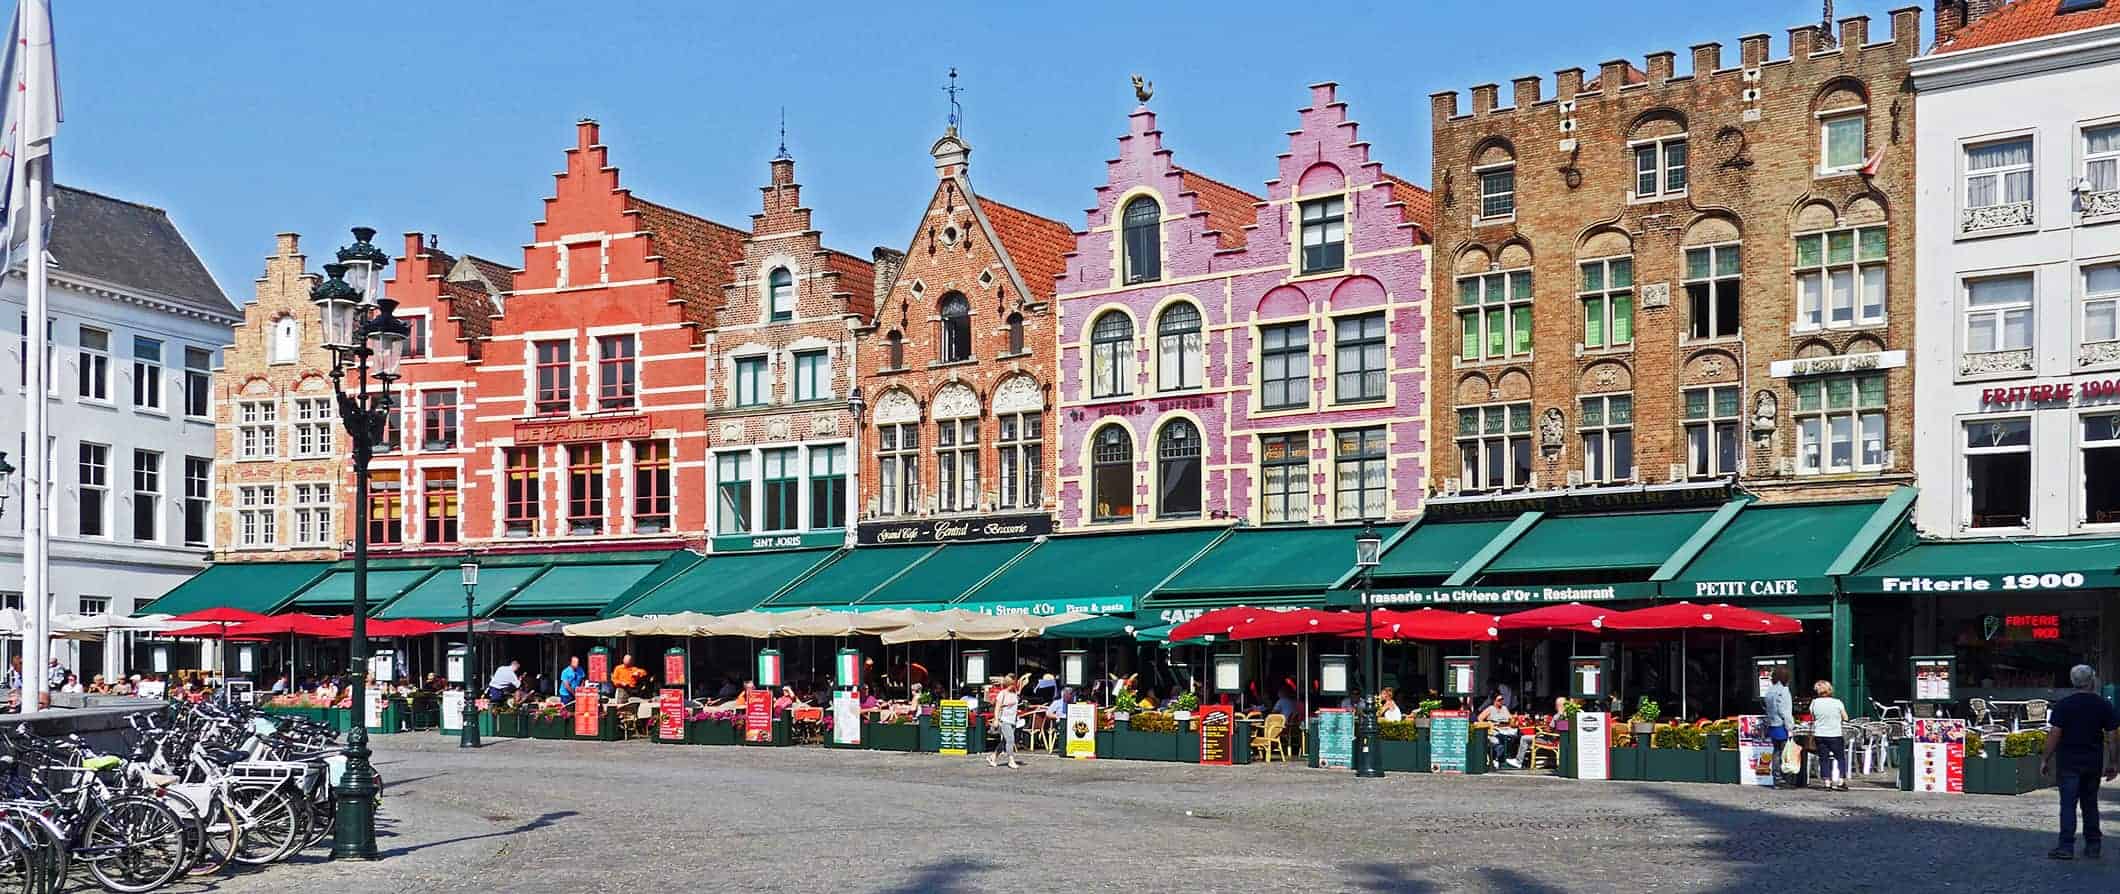 Uma rua multifolorada com casas antigas em Bruges, Bélgica, ao lado de uma área cheia de pessoas